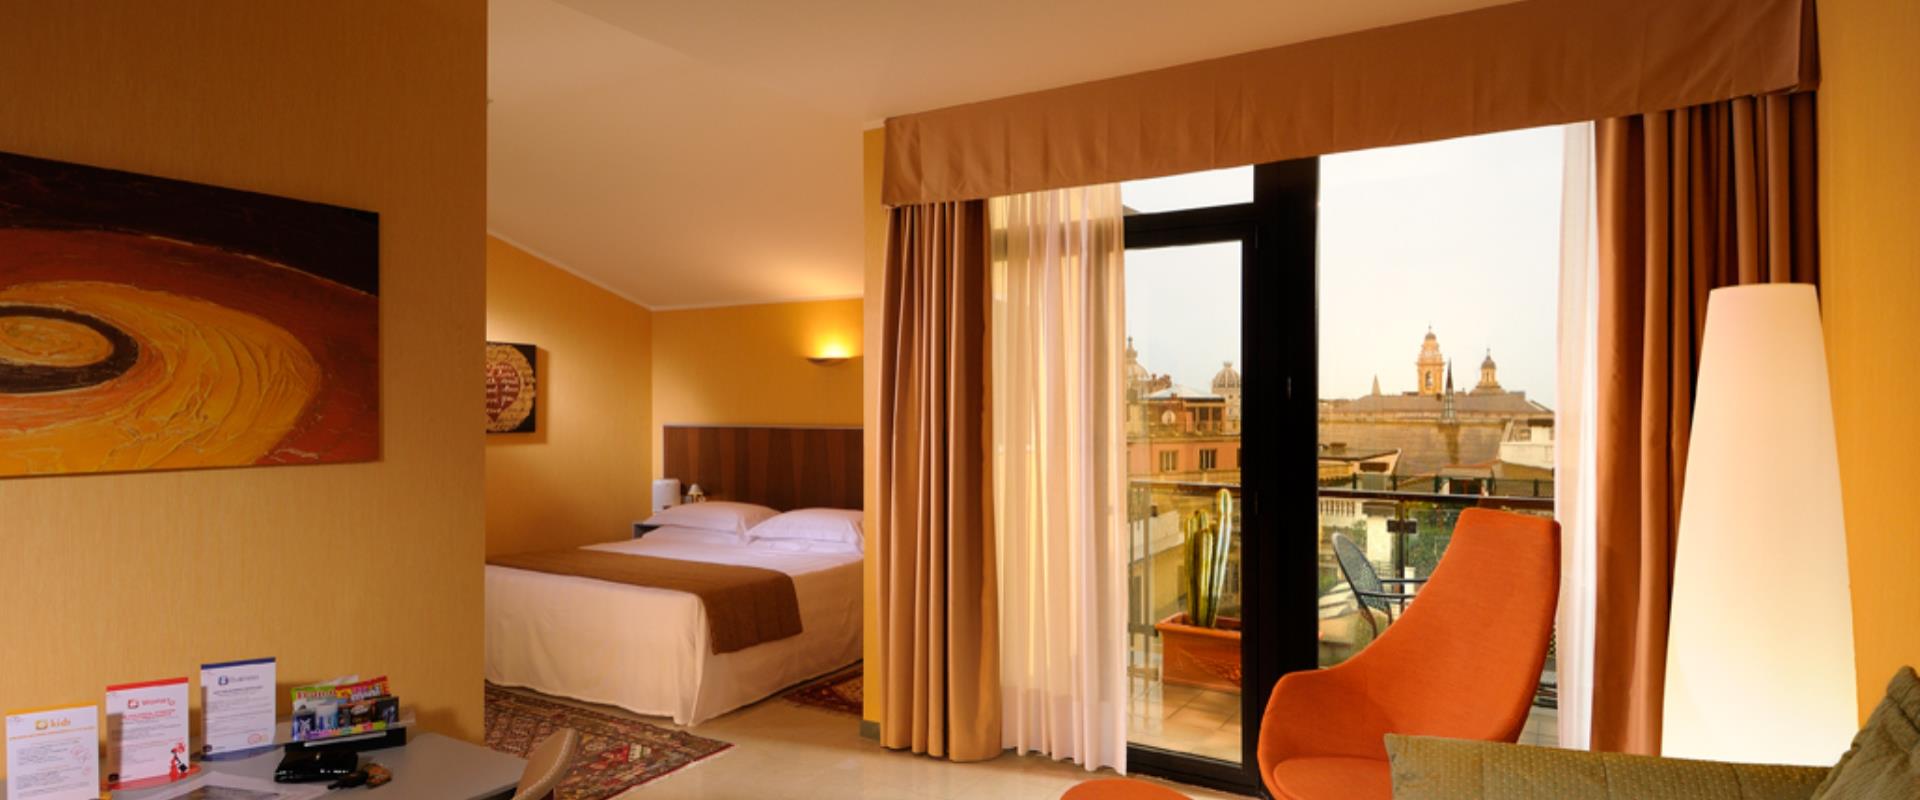 Prenota il tuo soggiorno al Best Western Plus City Hotel di Genova e scopri la nostra splendida Suite con terrazza